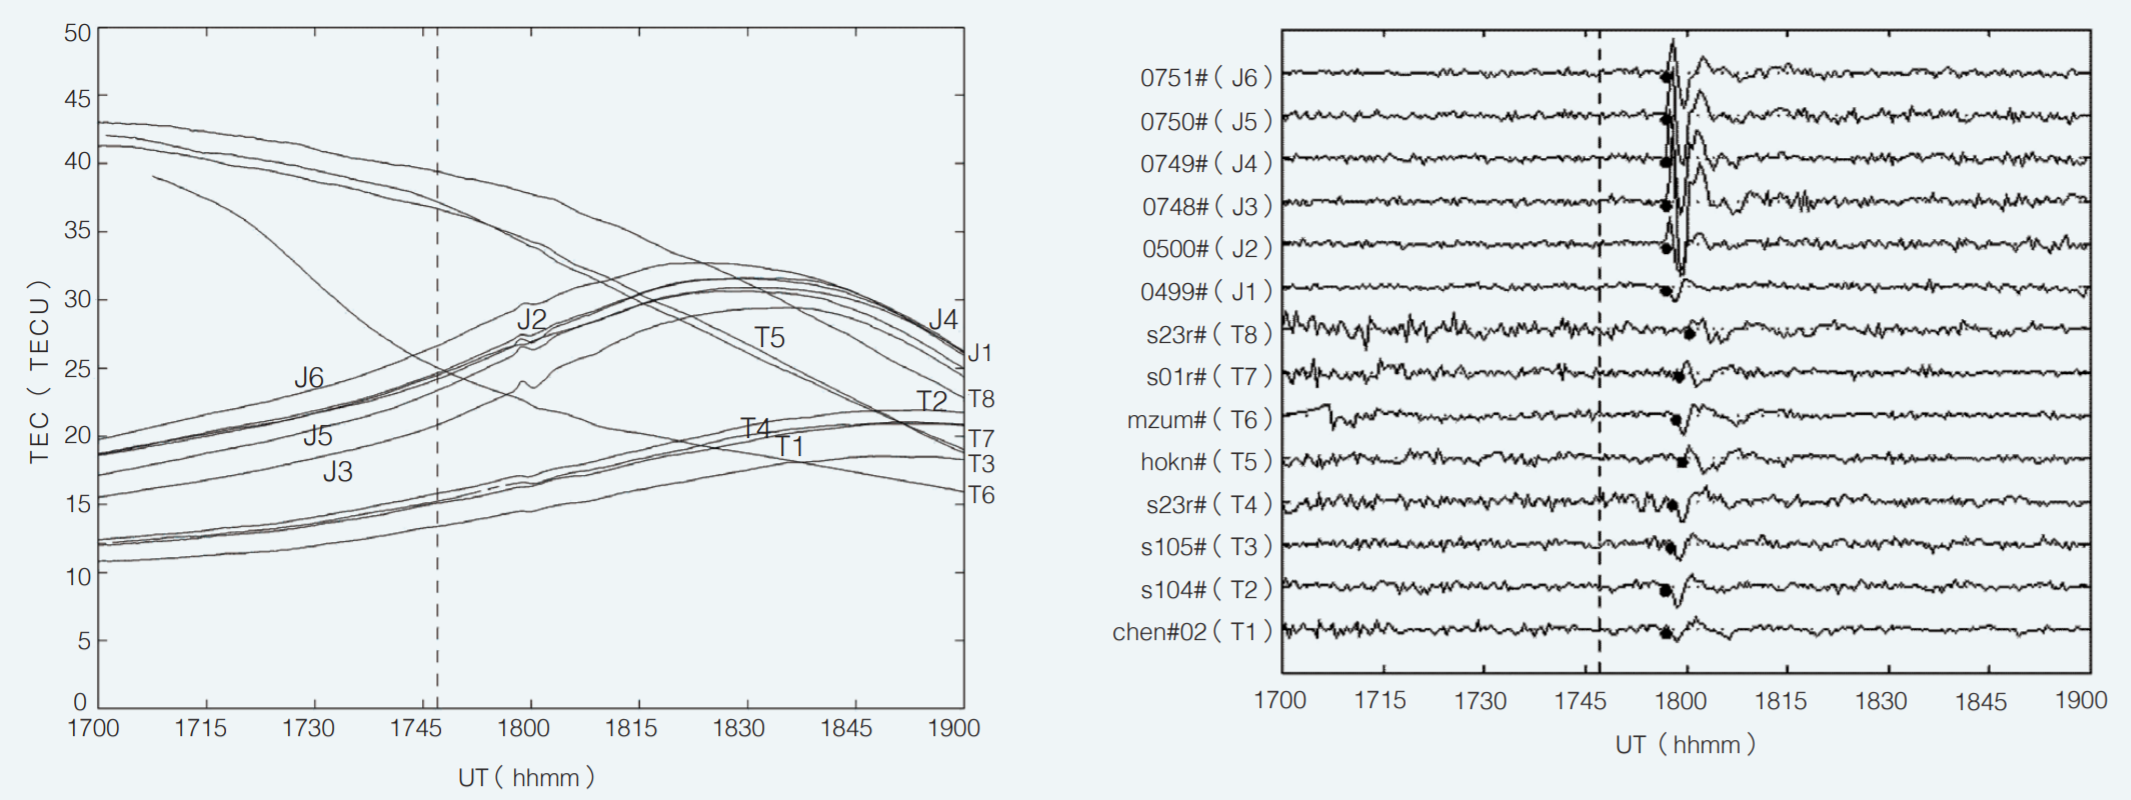 集集大地震期間，14 個太空地震儀所記錄的電離層全電子含量時序變化。（左）原始紀錄，T 和 J 分別代表台灣和日本地面 GPS 接收機對應衍生的太空地震儀紀錄。（右）濾波後變化。黑點：電離層擾亂到達的時刻。振動擾亂量在原始紀錄中非常小，大約只有 1 個全電子含量單位，惟經濾波處理後清楚可見。